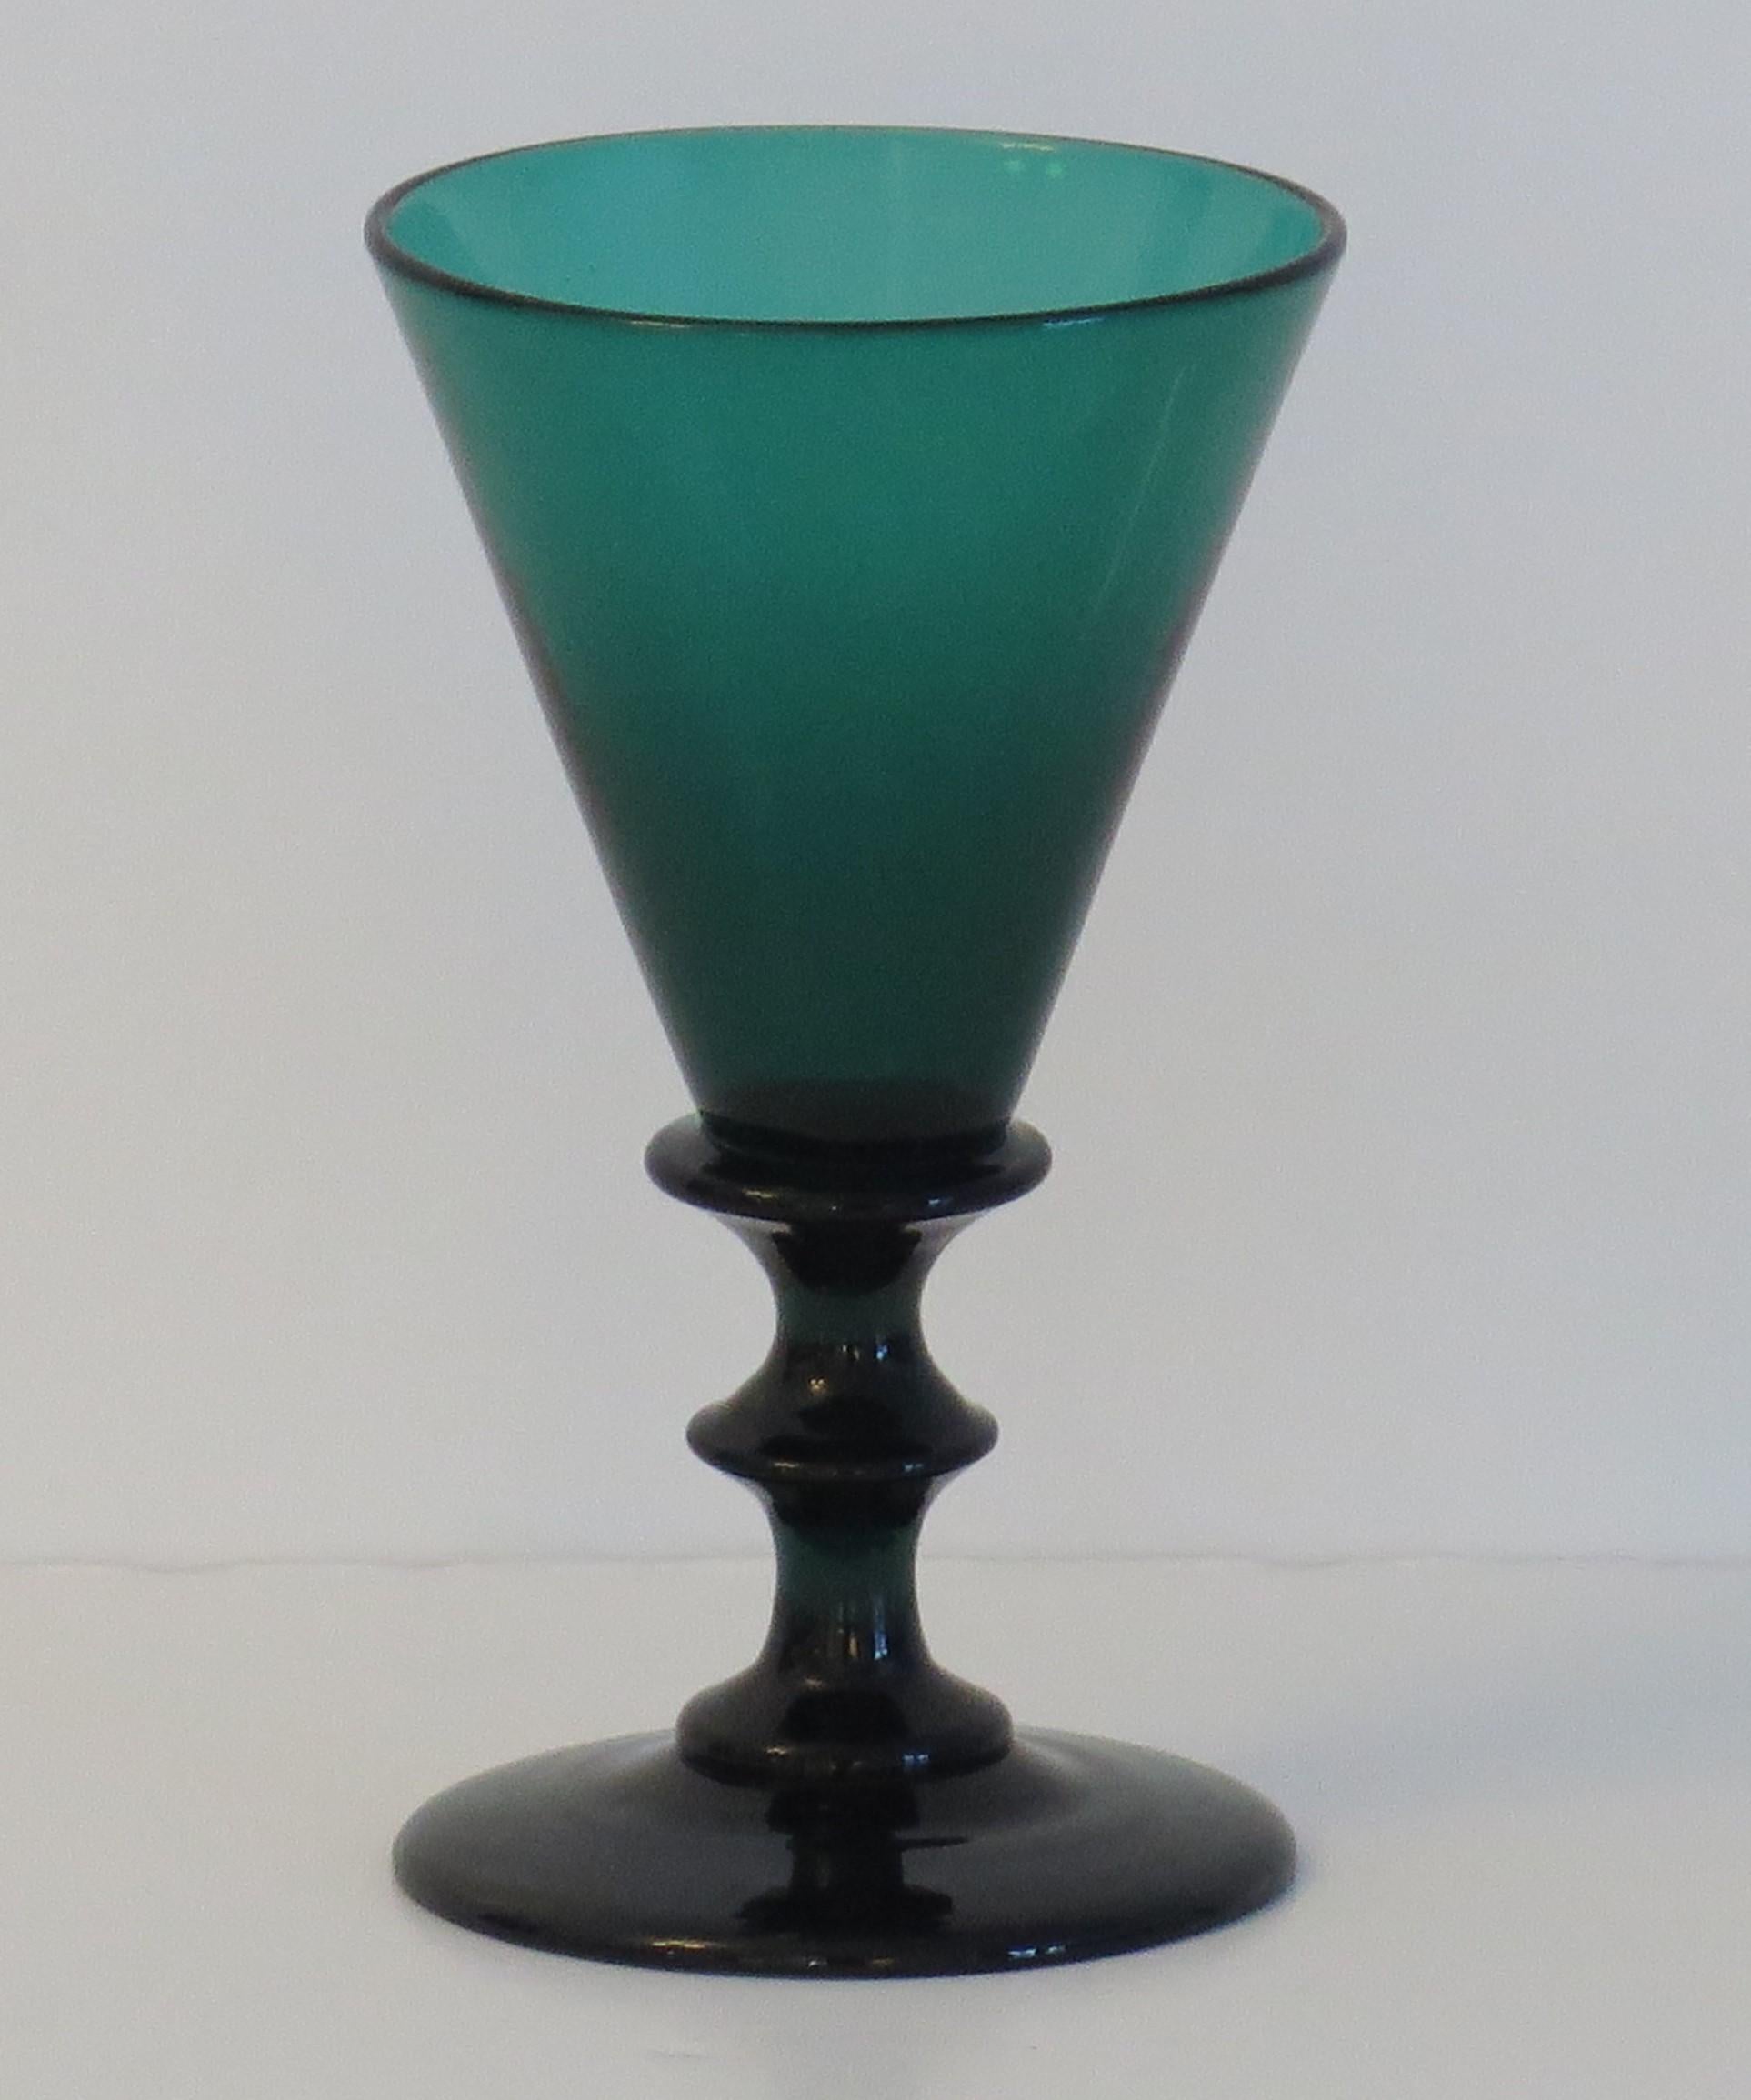 Il s'agit d'un excellent exemple de verre à vin vert de Bristol, soufflé à la bouche, datant du début du 19e siècle et de la période George 111 Regency, vers 1815.

Ce verre présente une élégante coupe conique avec un bouton d'épaule en forme de